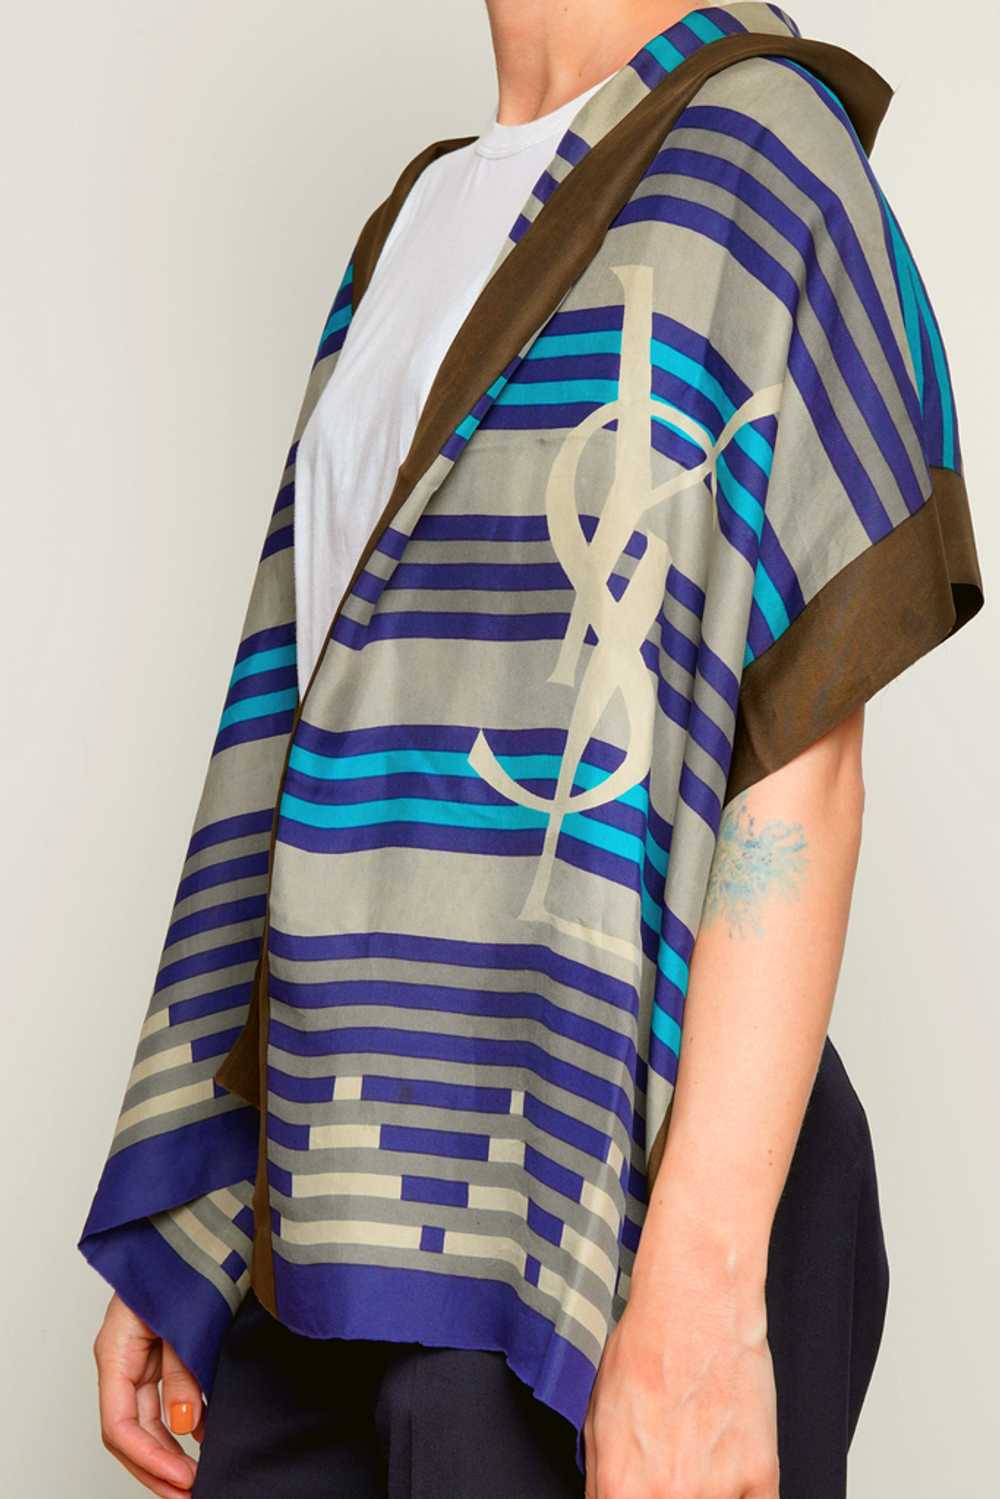 YSL Scarf Blue Striped Silk Shawl. - image 4